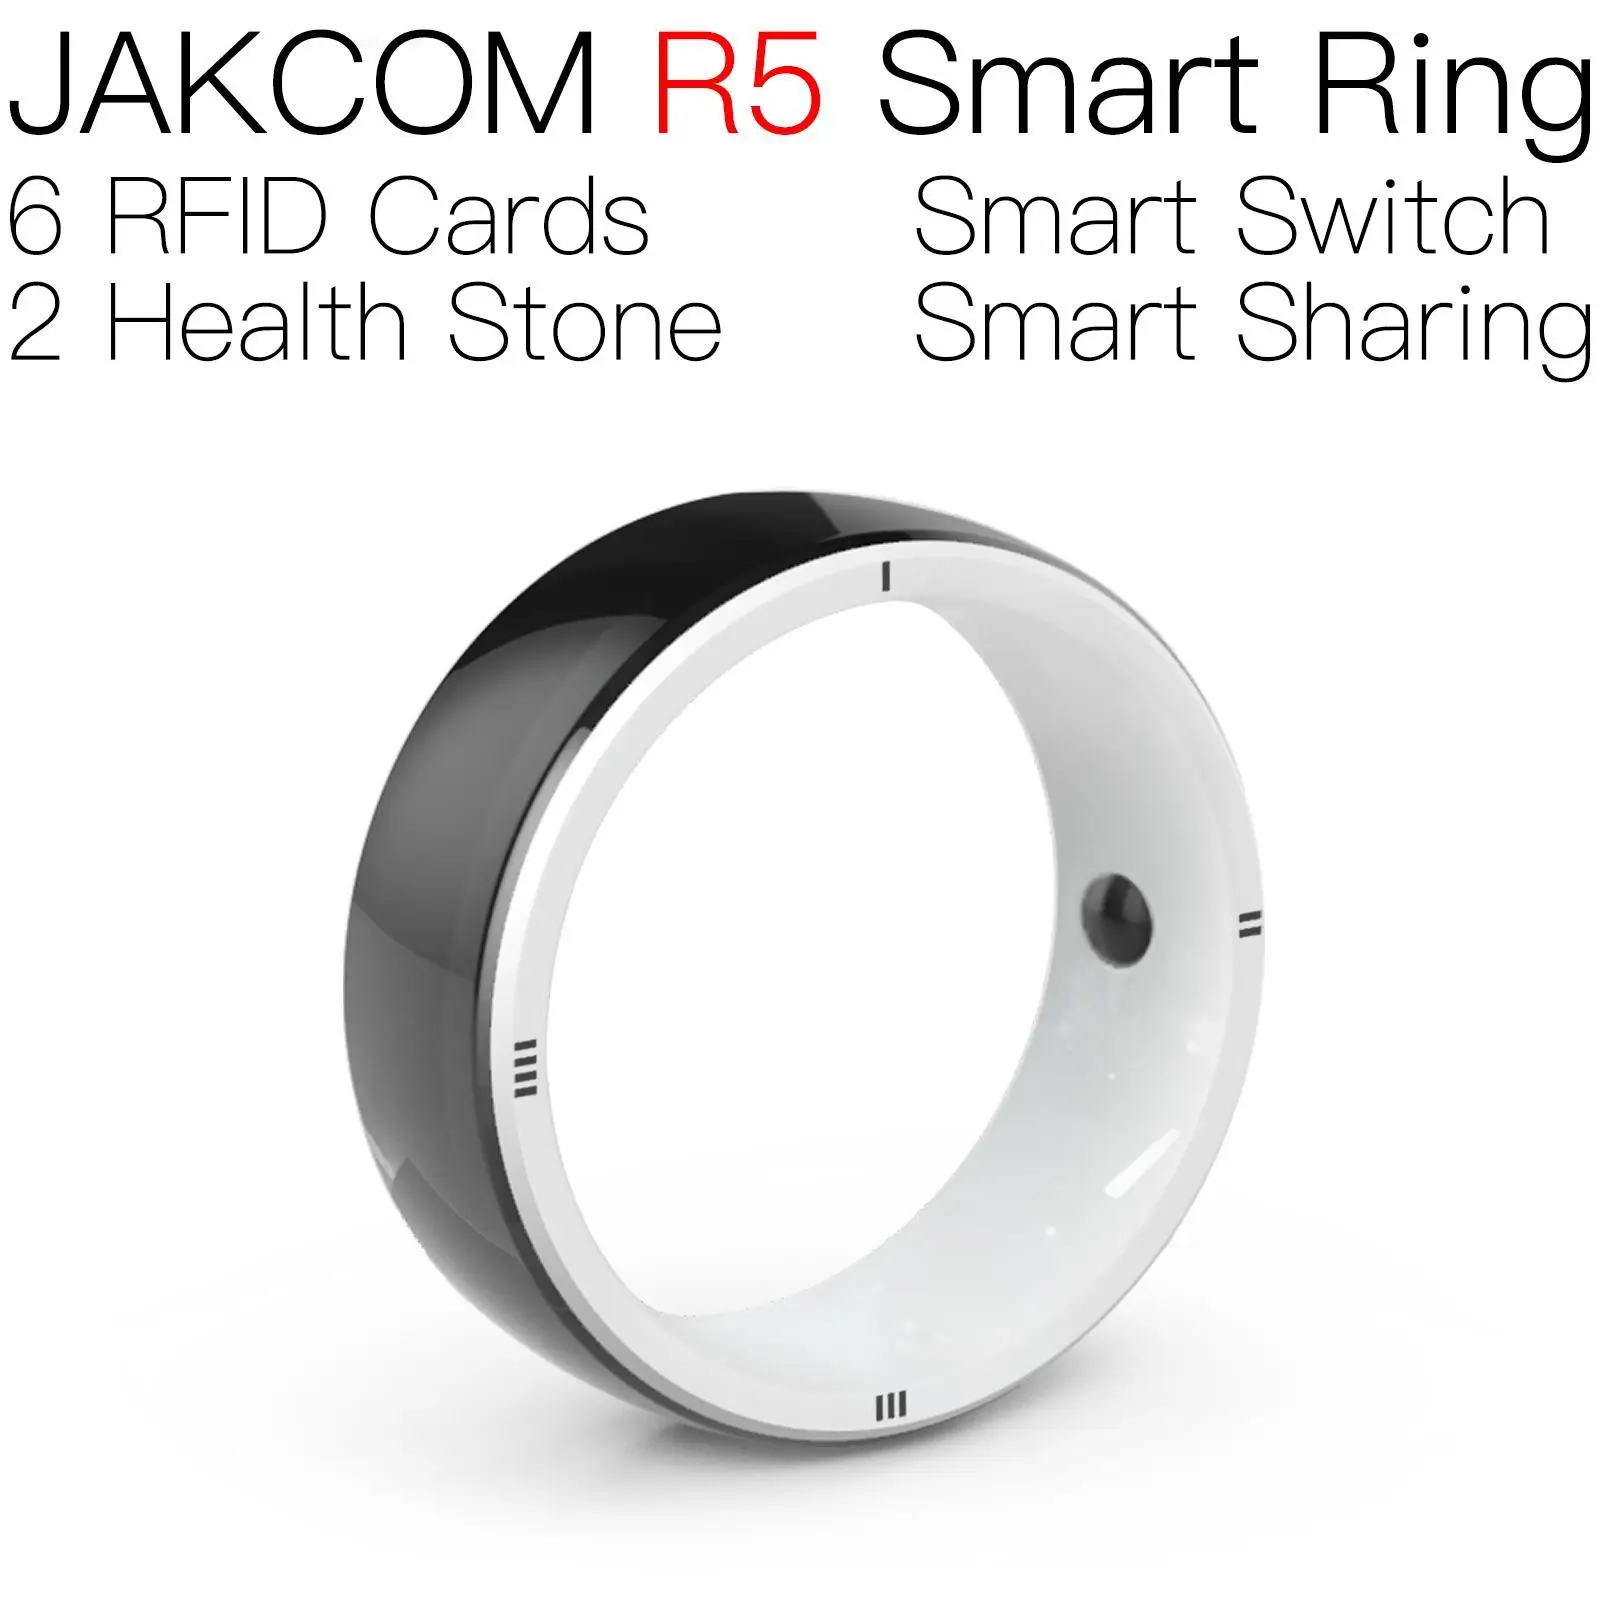 

Умное кольцо JAKCOM R5, лучший подарок с биркой rfid, инопланетянин, игровая карта, перезаписываемая карта, набор для печати, гаджеты, новый РЧ микрочип